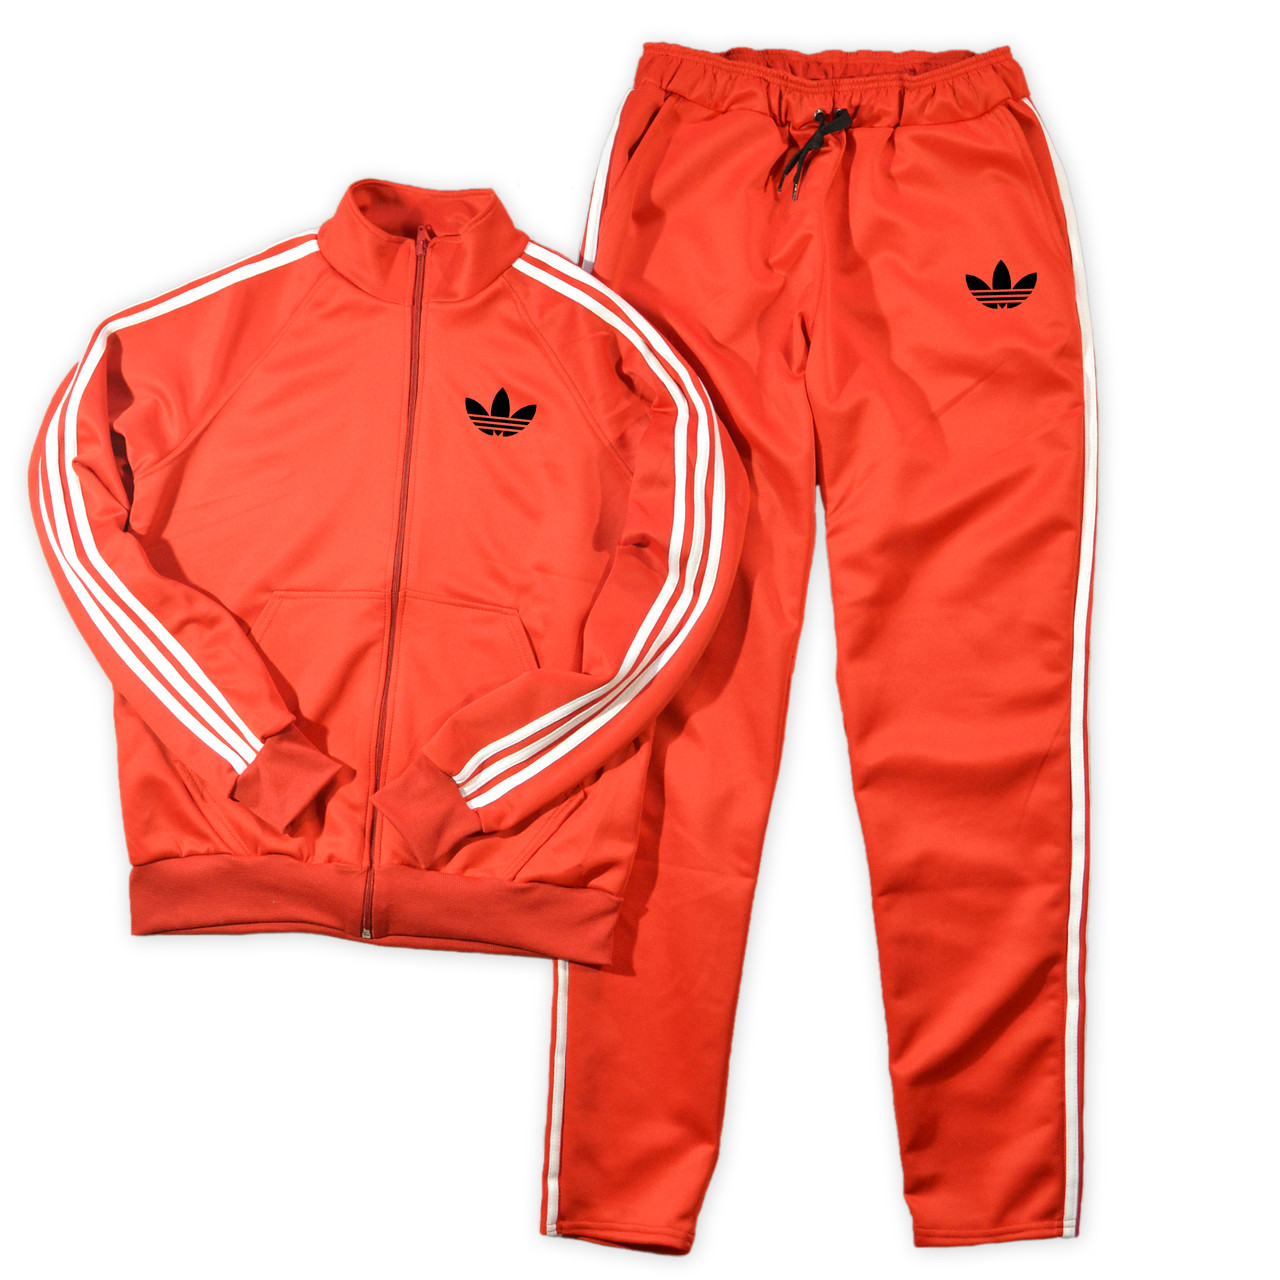 Спортивний костюм Adidas (Адідас) червоного кольору для тренувань